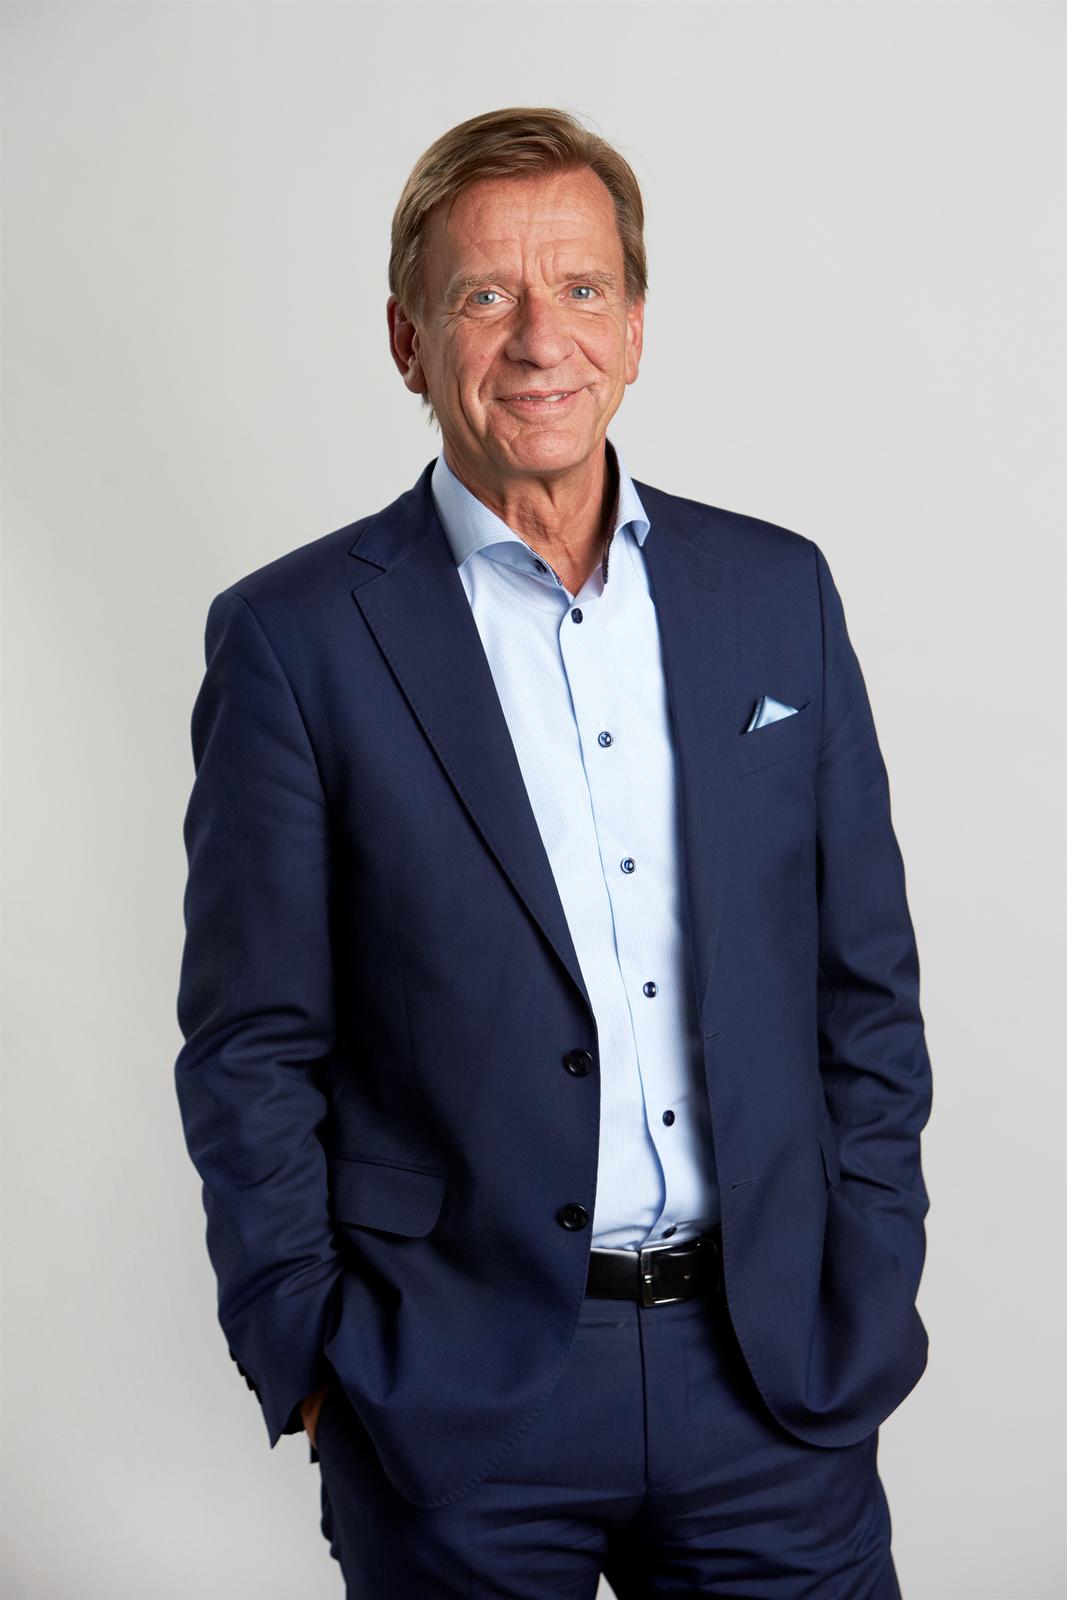 Håkan Samuelsson – President & CEO, Volvo Car Group